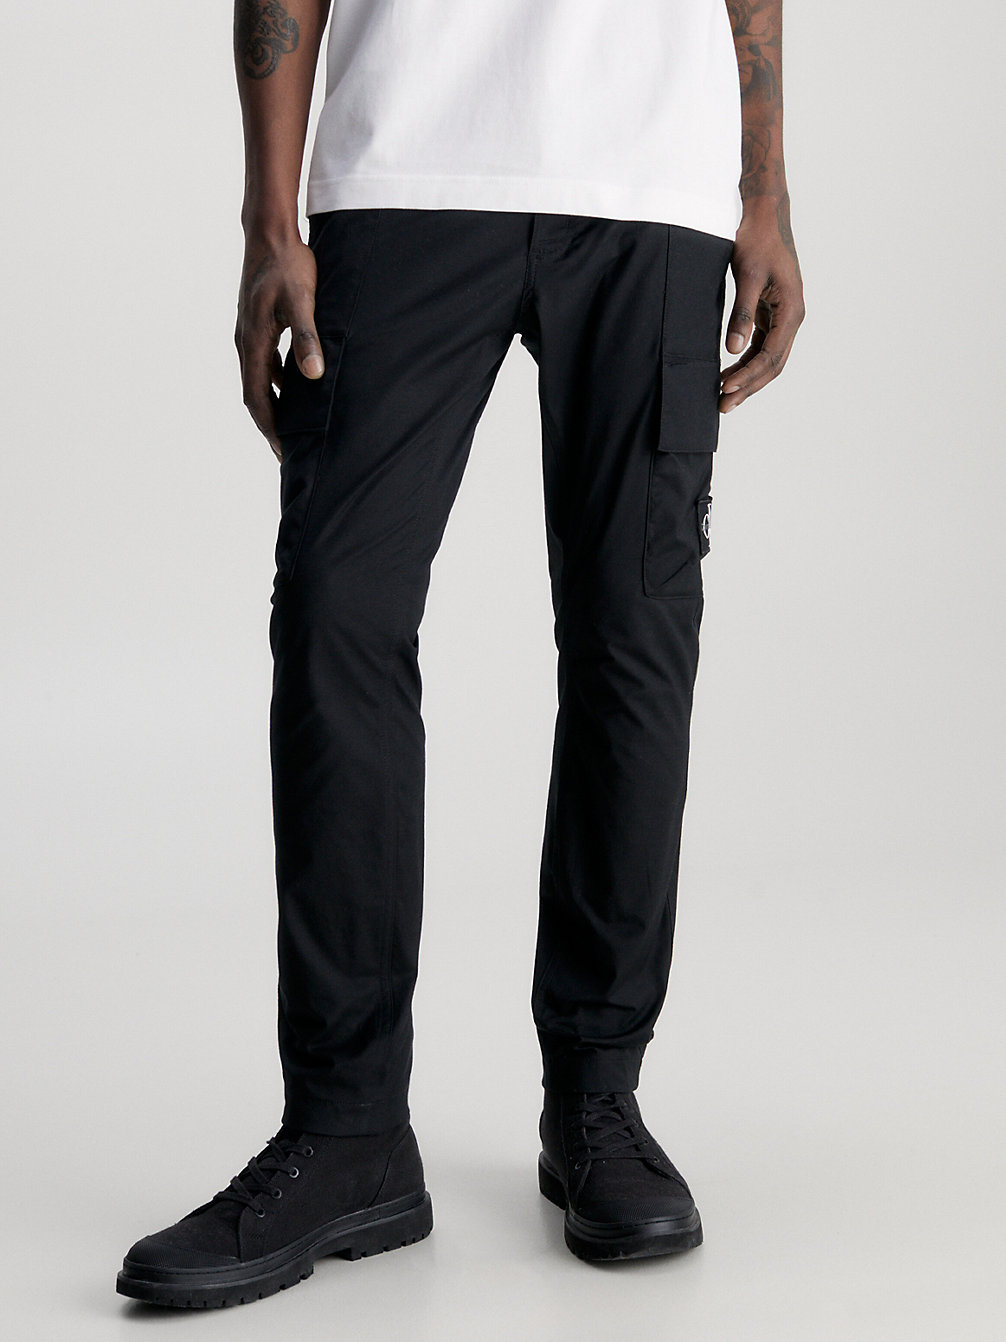 CK BLACK Skinny Washed Cargo Pants undefined men Calvin Klein